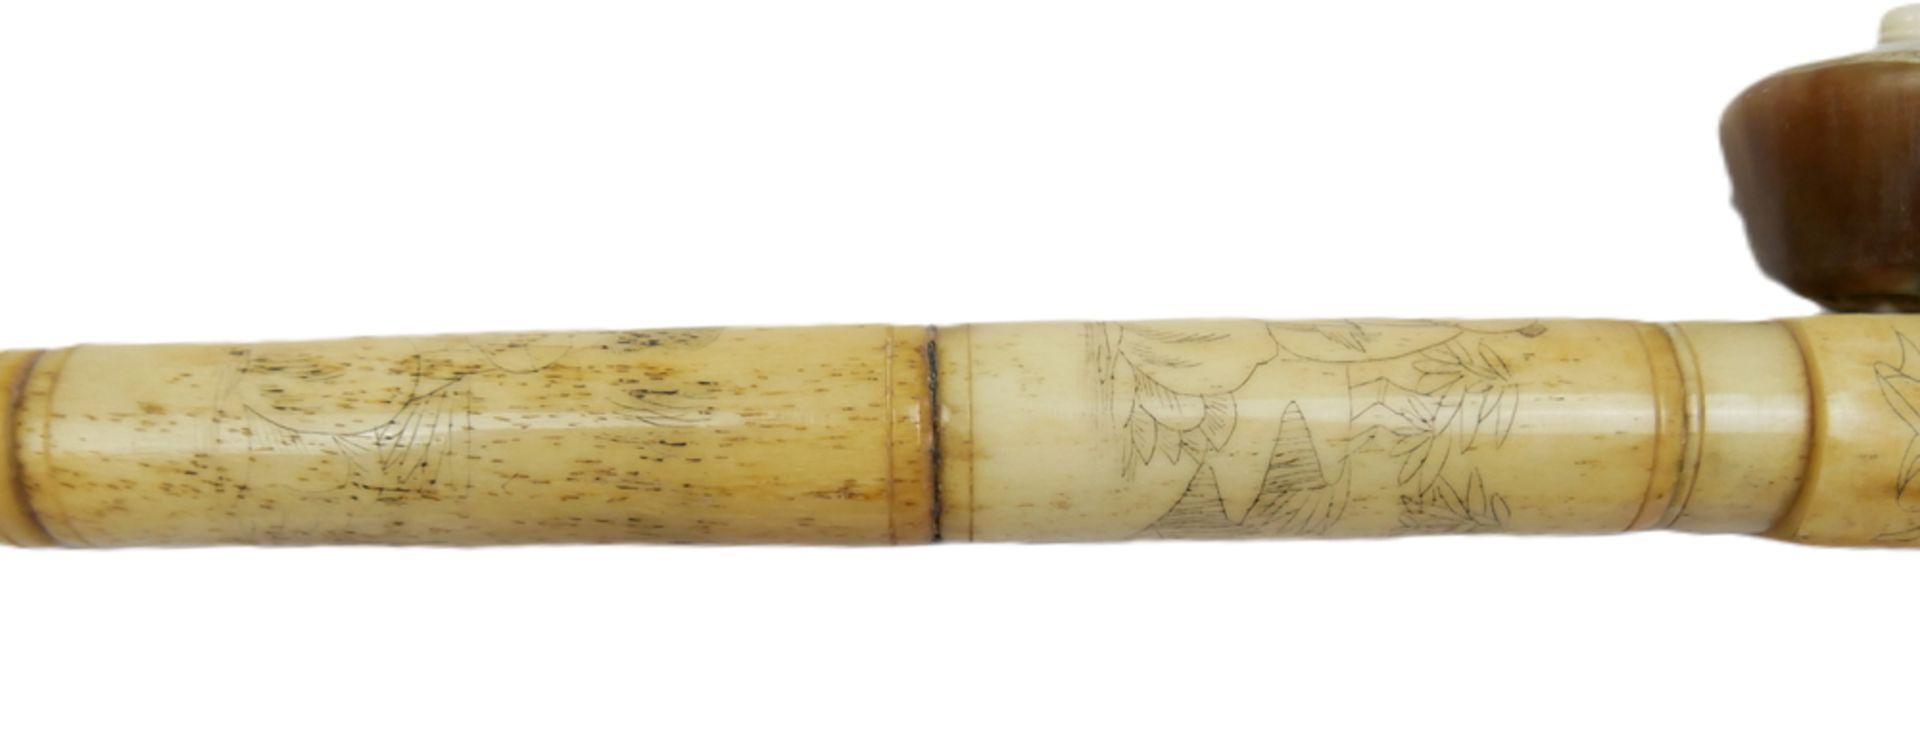 Chinesische Opiumpfeife aus Knochen, geschnitzt und verziert mit Geishas und Landschaften. Länge ca. - Image 2 of 3